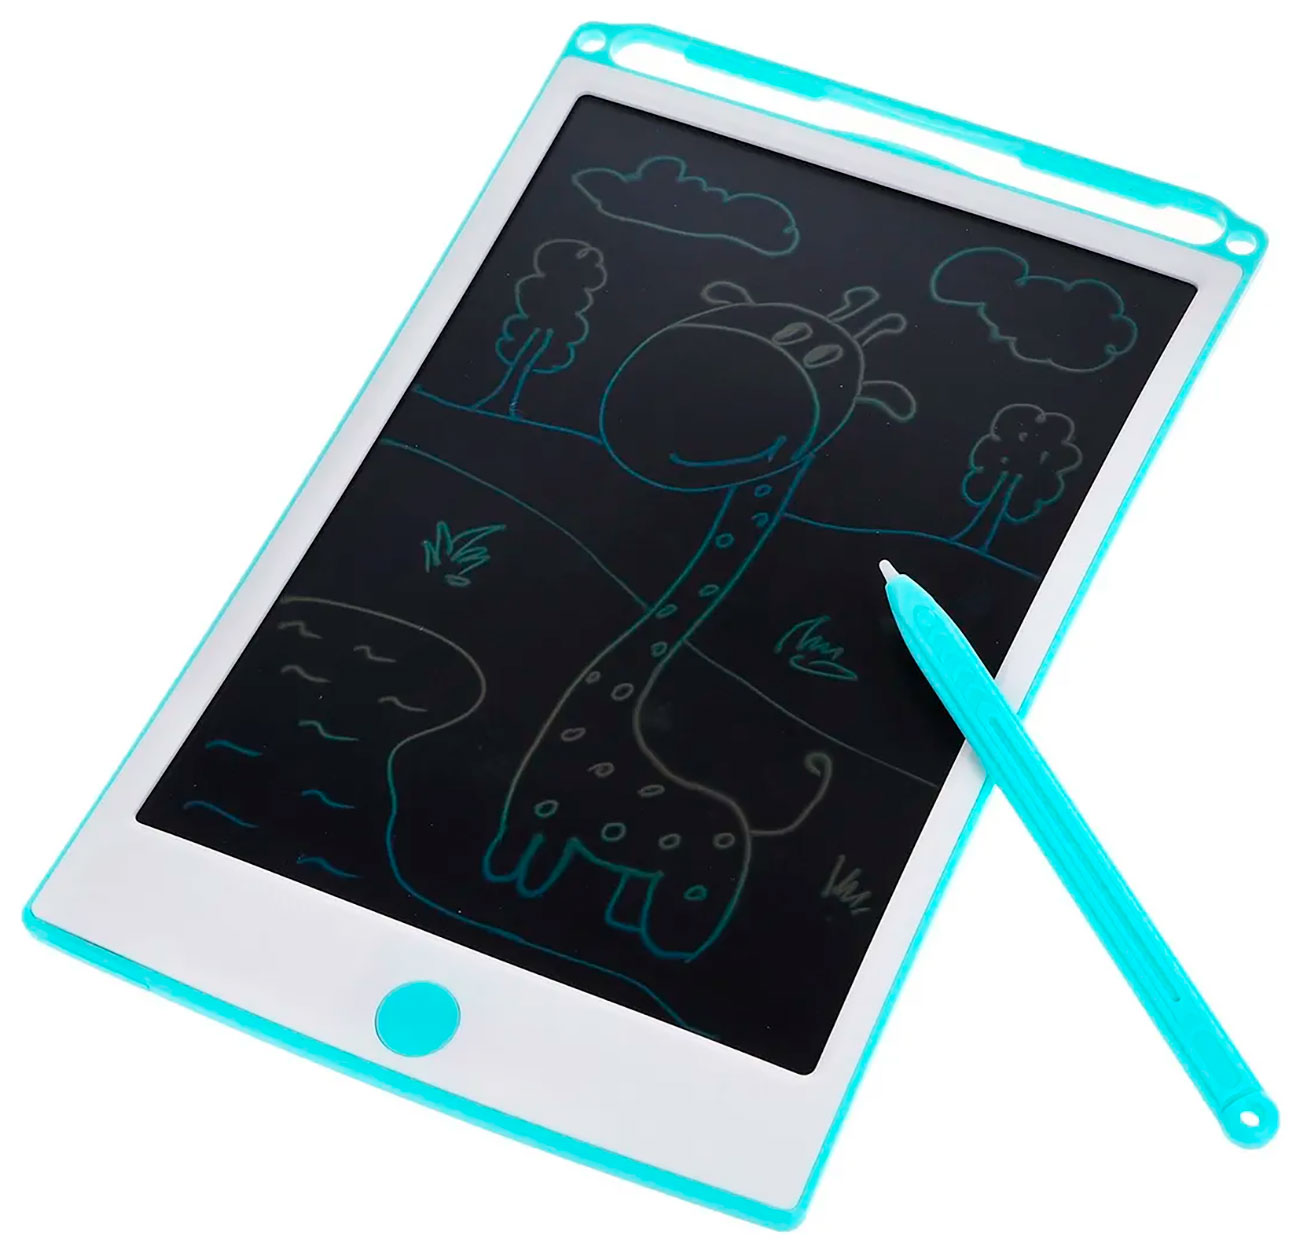 LCD-планшет On time 21.5 см, многоцветный, 6 трафаретов (45028) конструктор on time электронный логи блоки развивающая игрушка